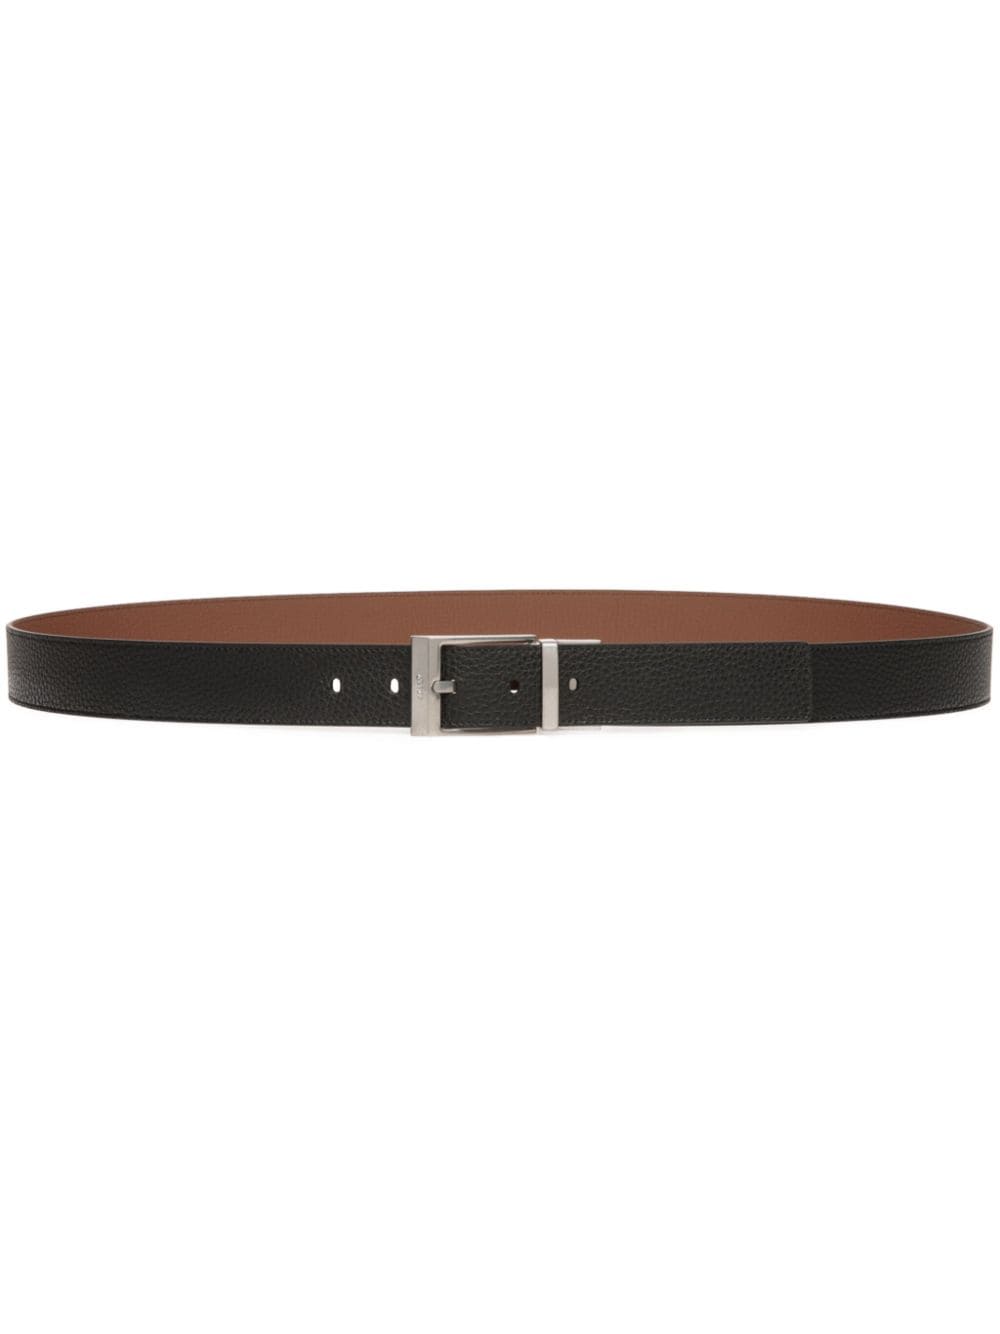 Bally leather buckle belt - Black von Bally